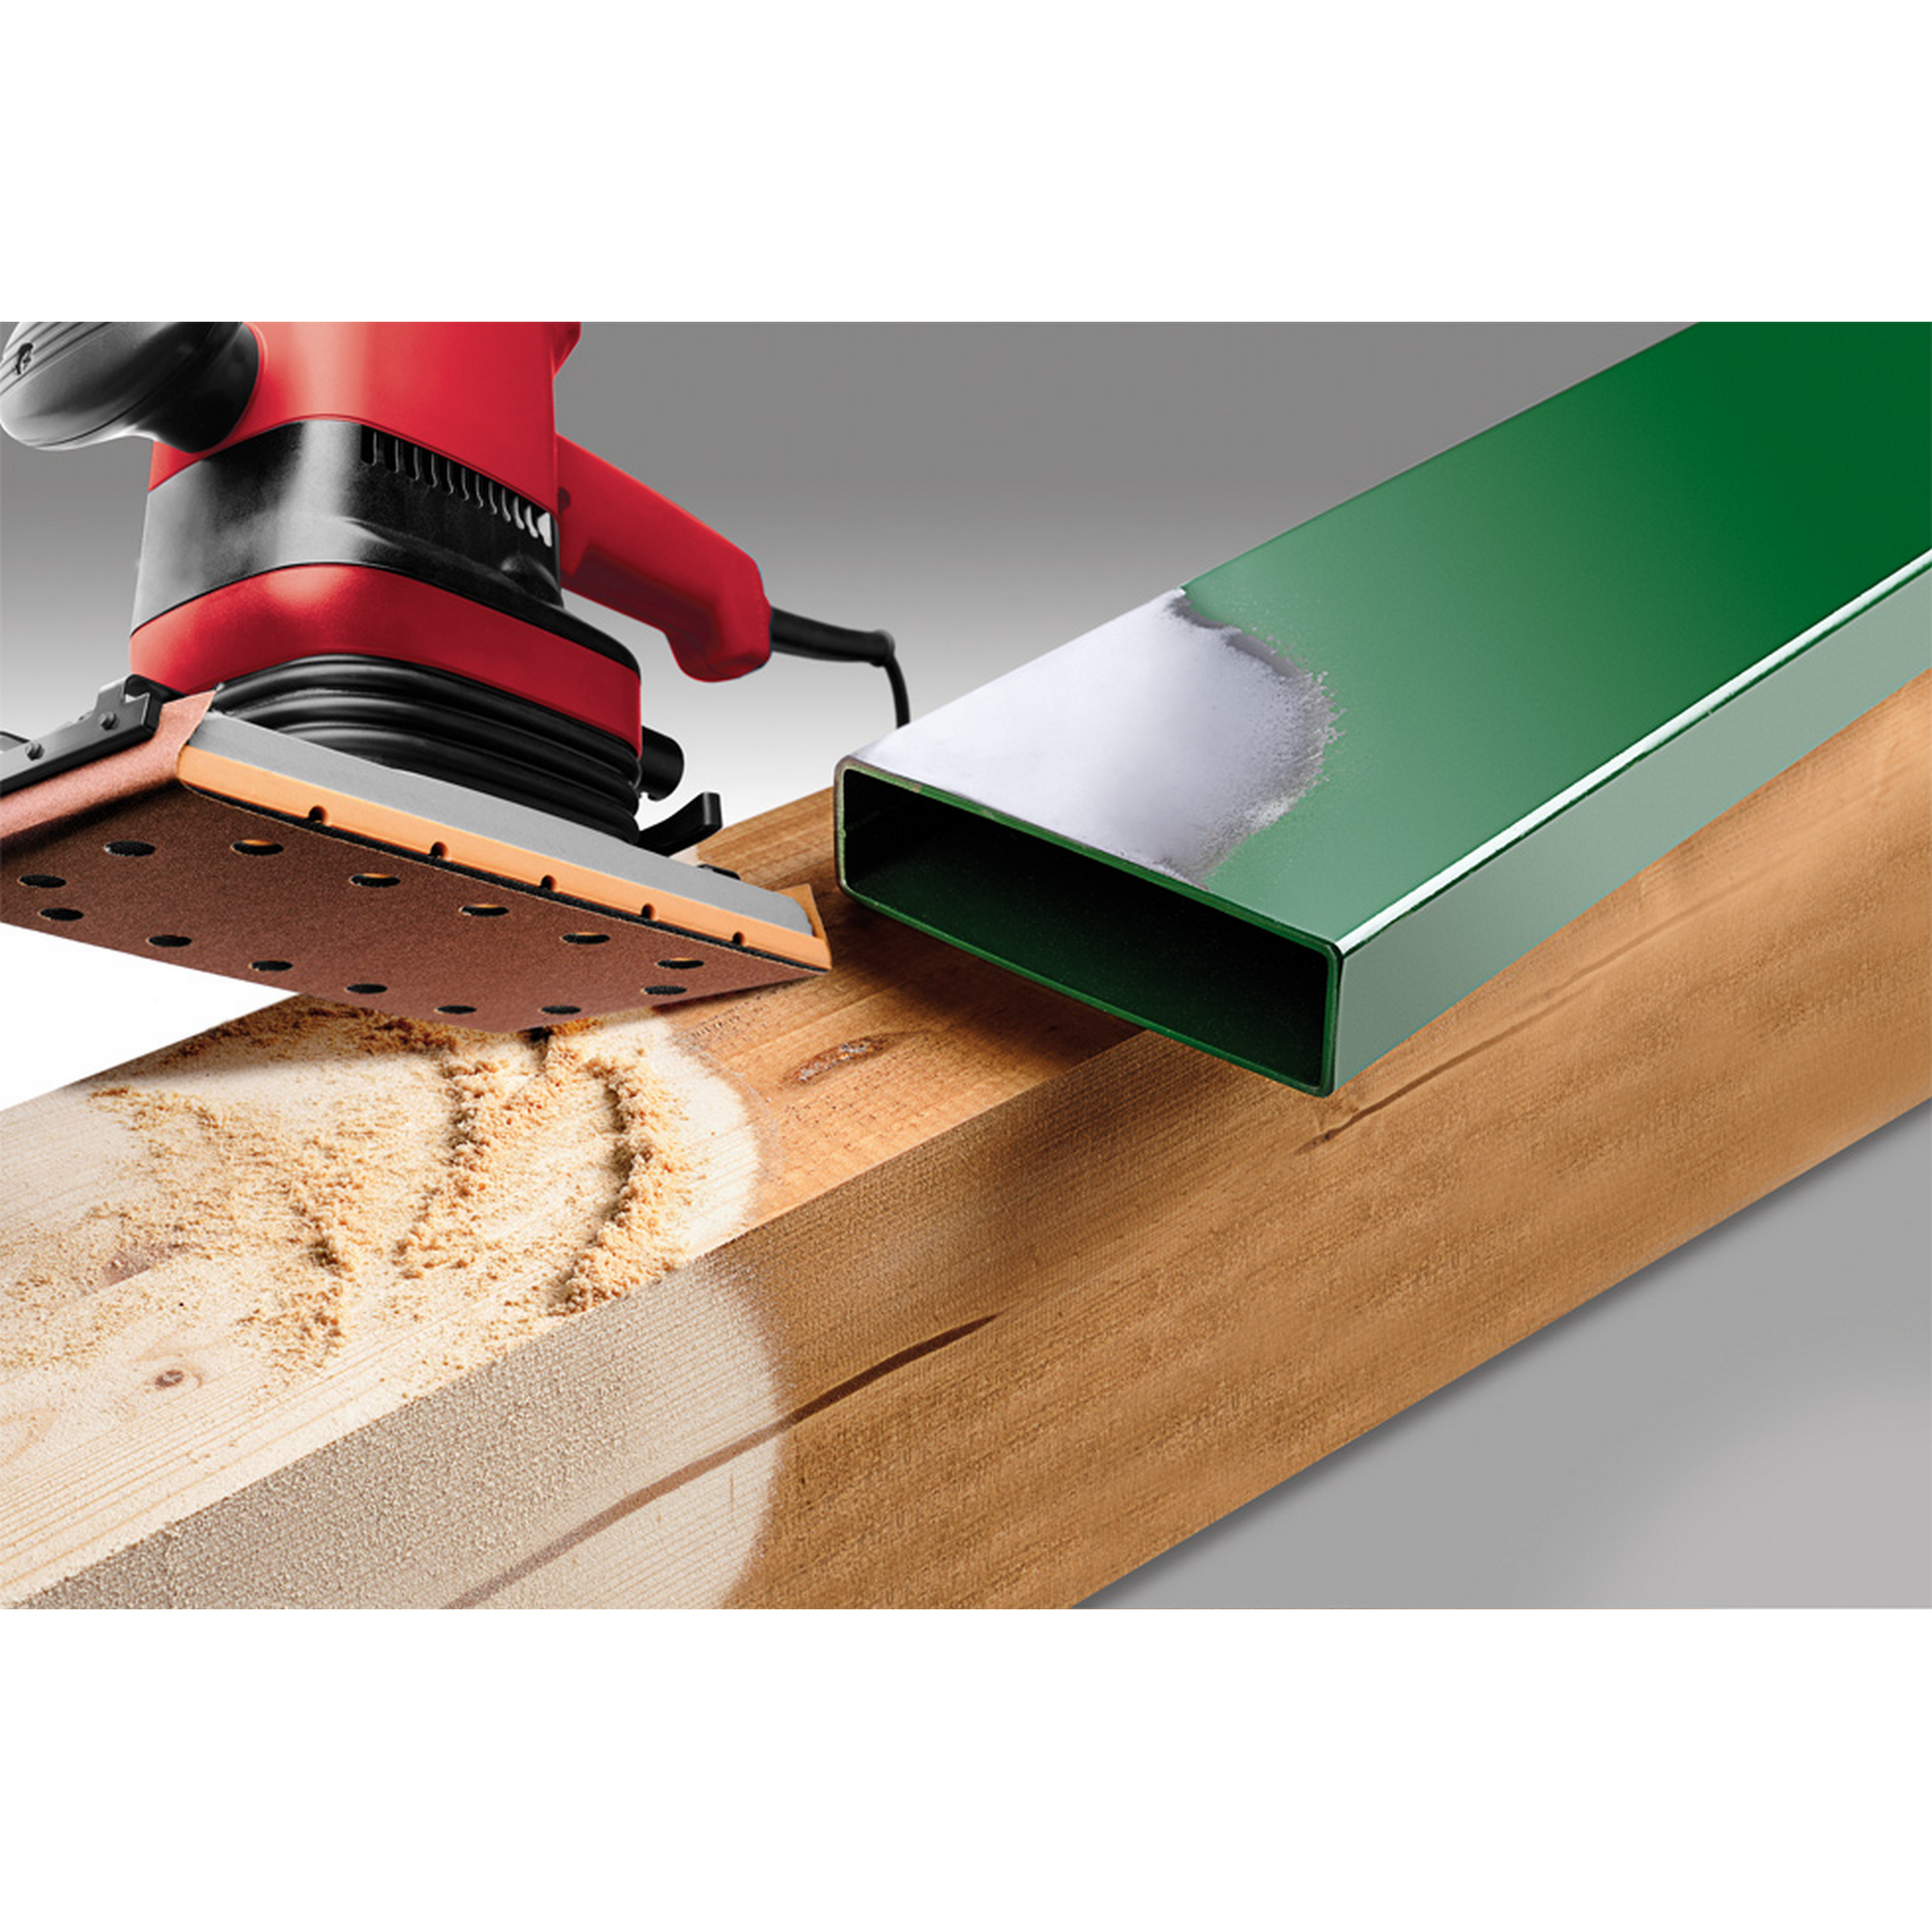 Schleifstreifen 'Holz & Metall' 115 x 280 mm K180 10 Stück + product picture